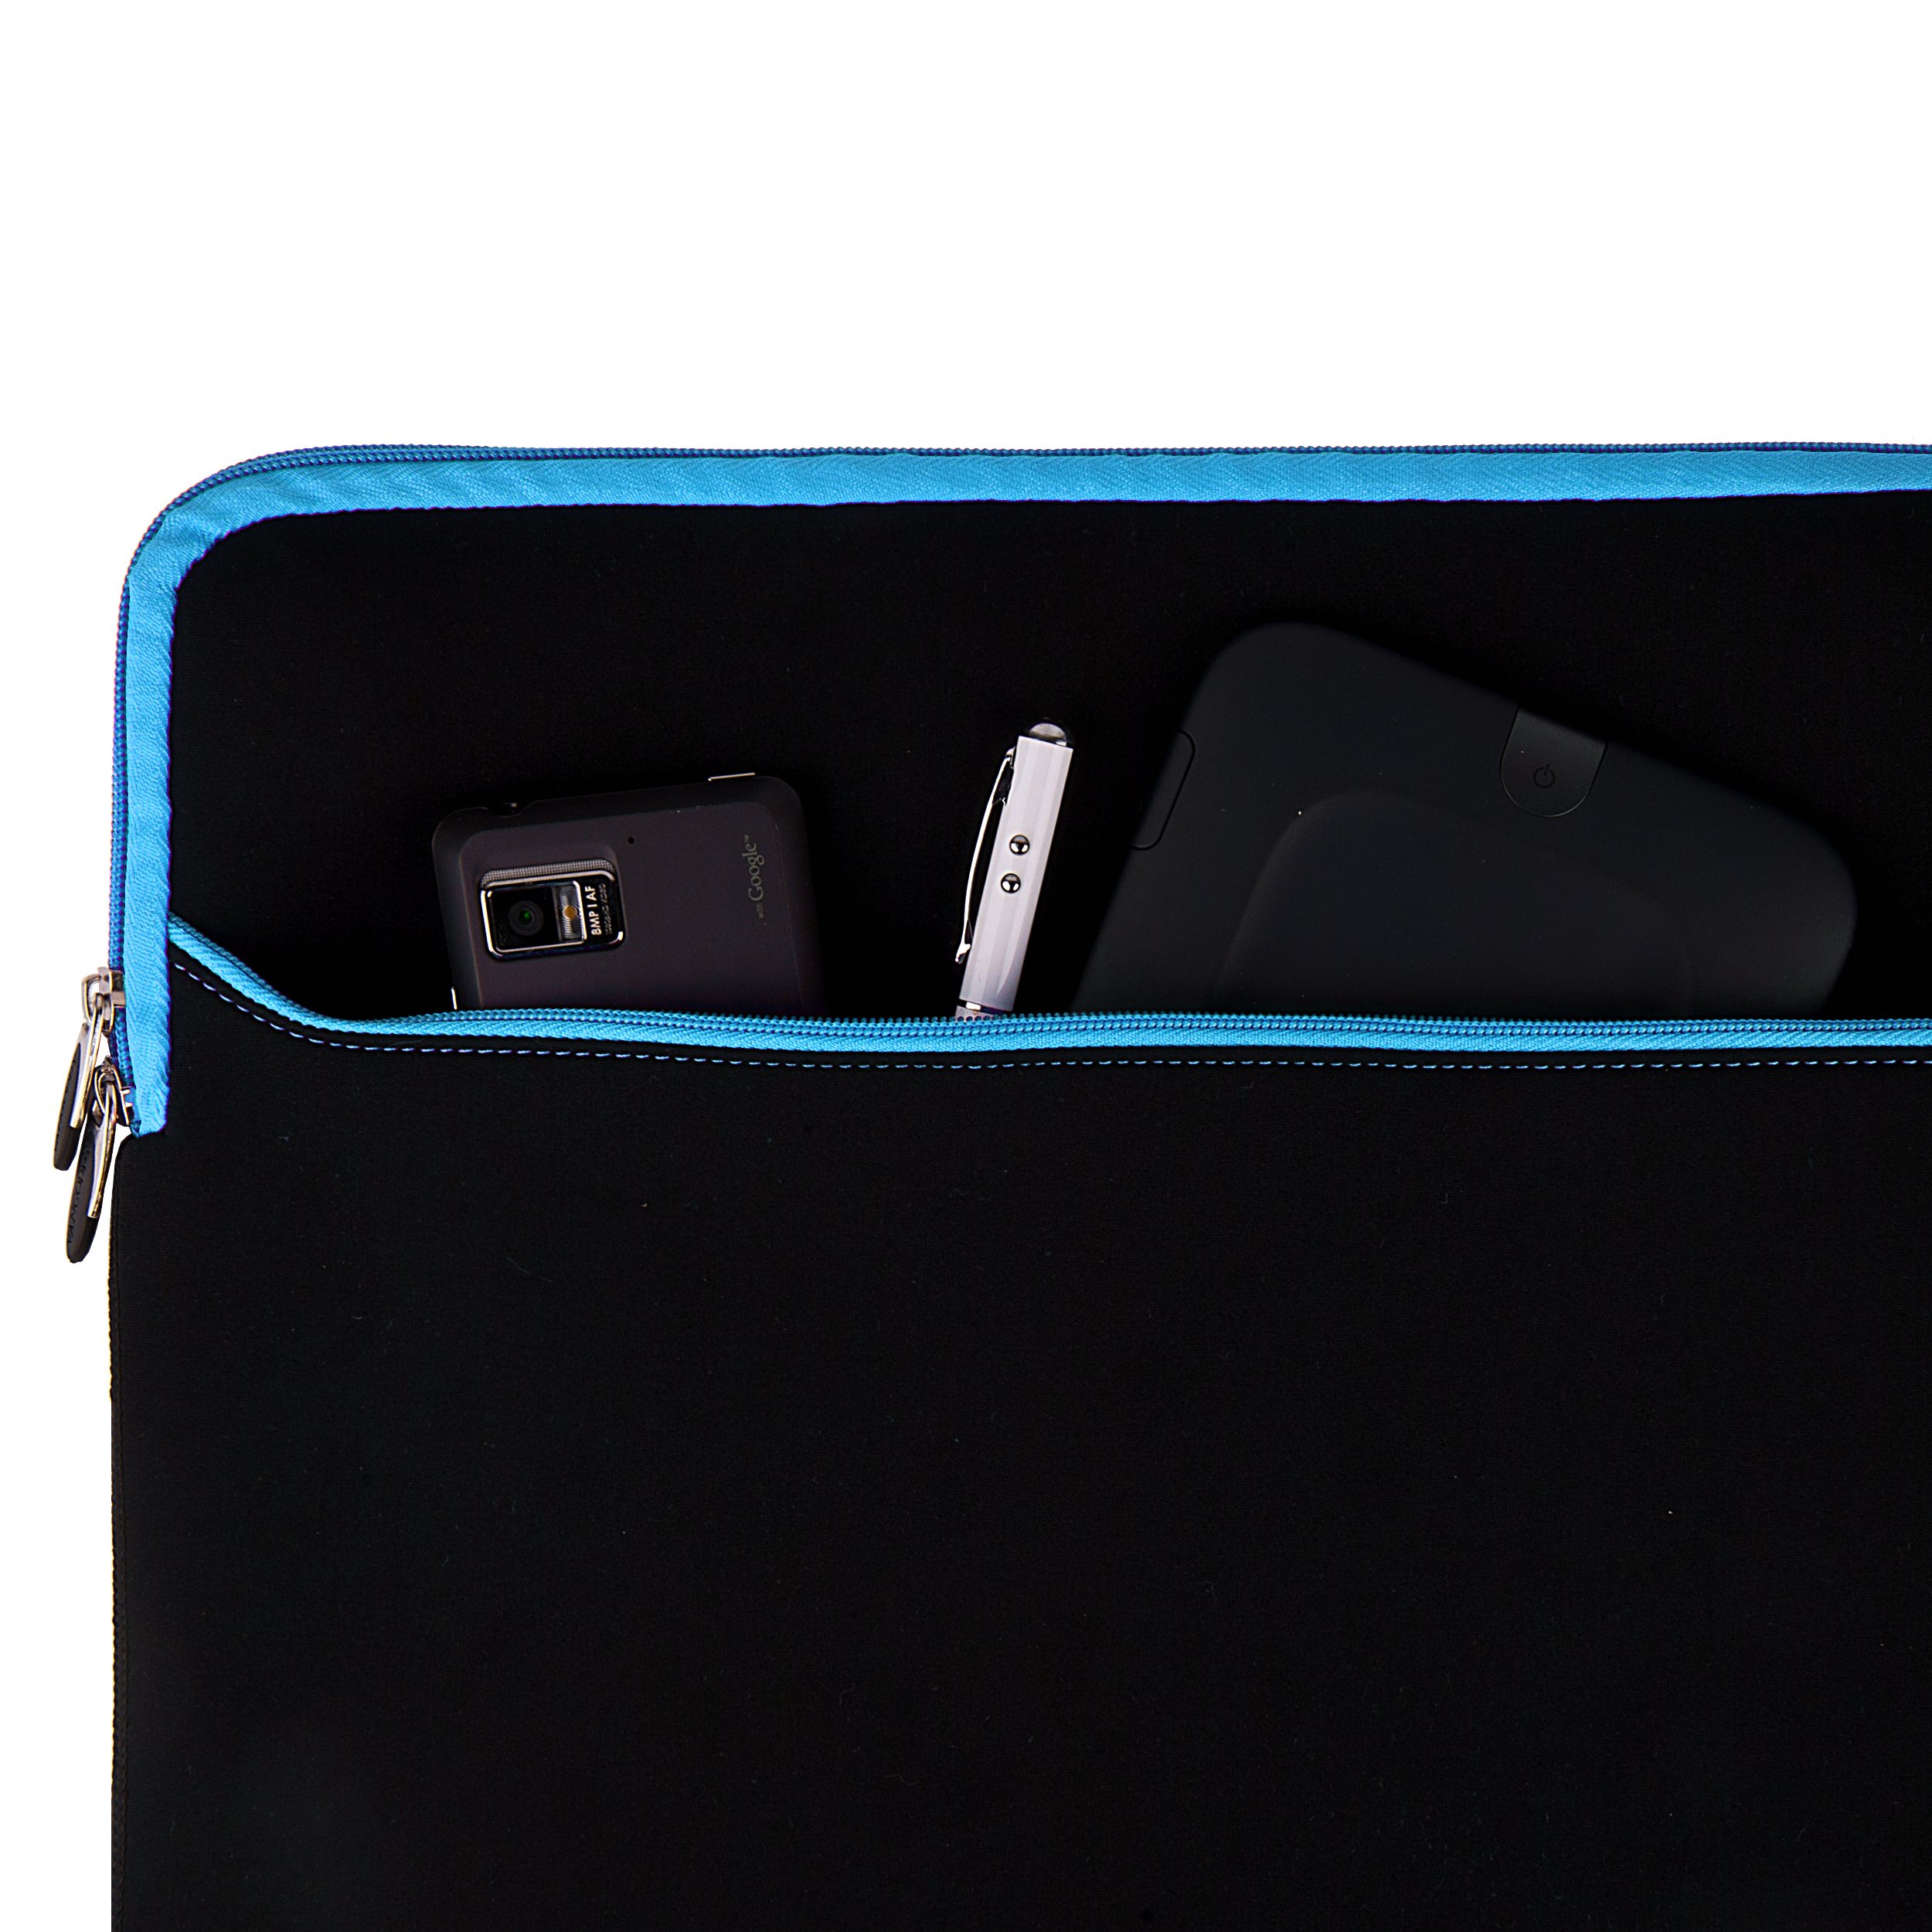 Laptop Cover Case Sleeve for HP EliteBook 850 840 G7 G6 G5, x360 1040 1030 830 G7 G6 G3, ProBook 650 640 450 G7 (Black Blue)